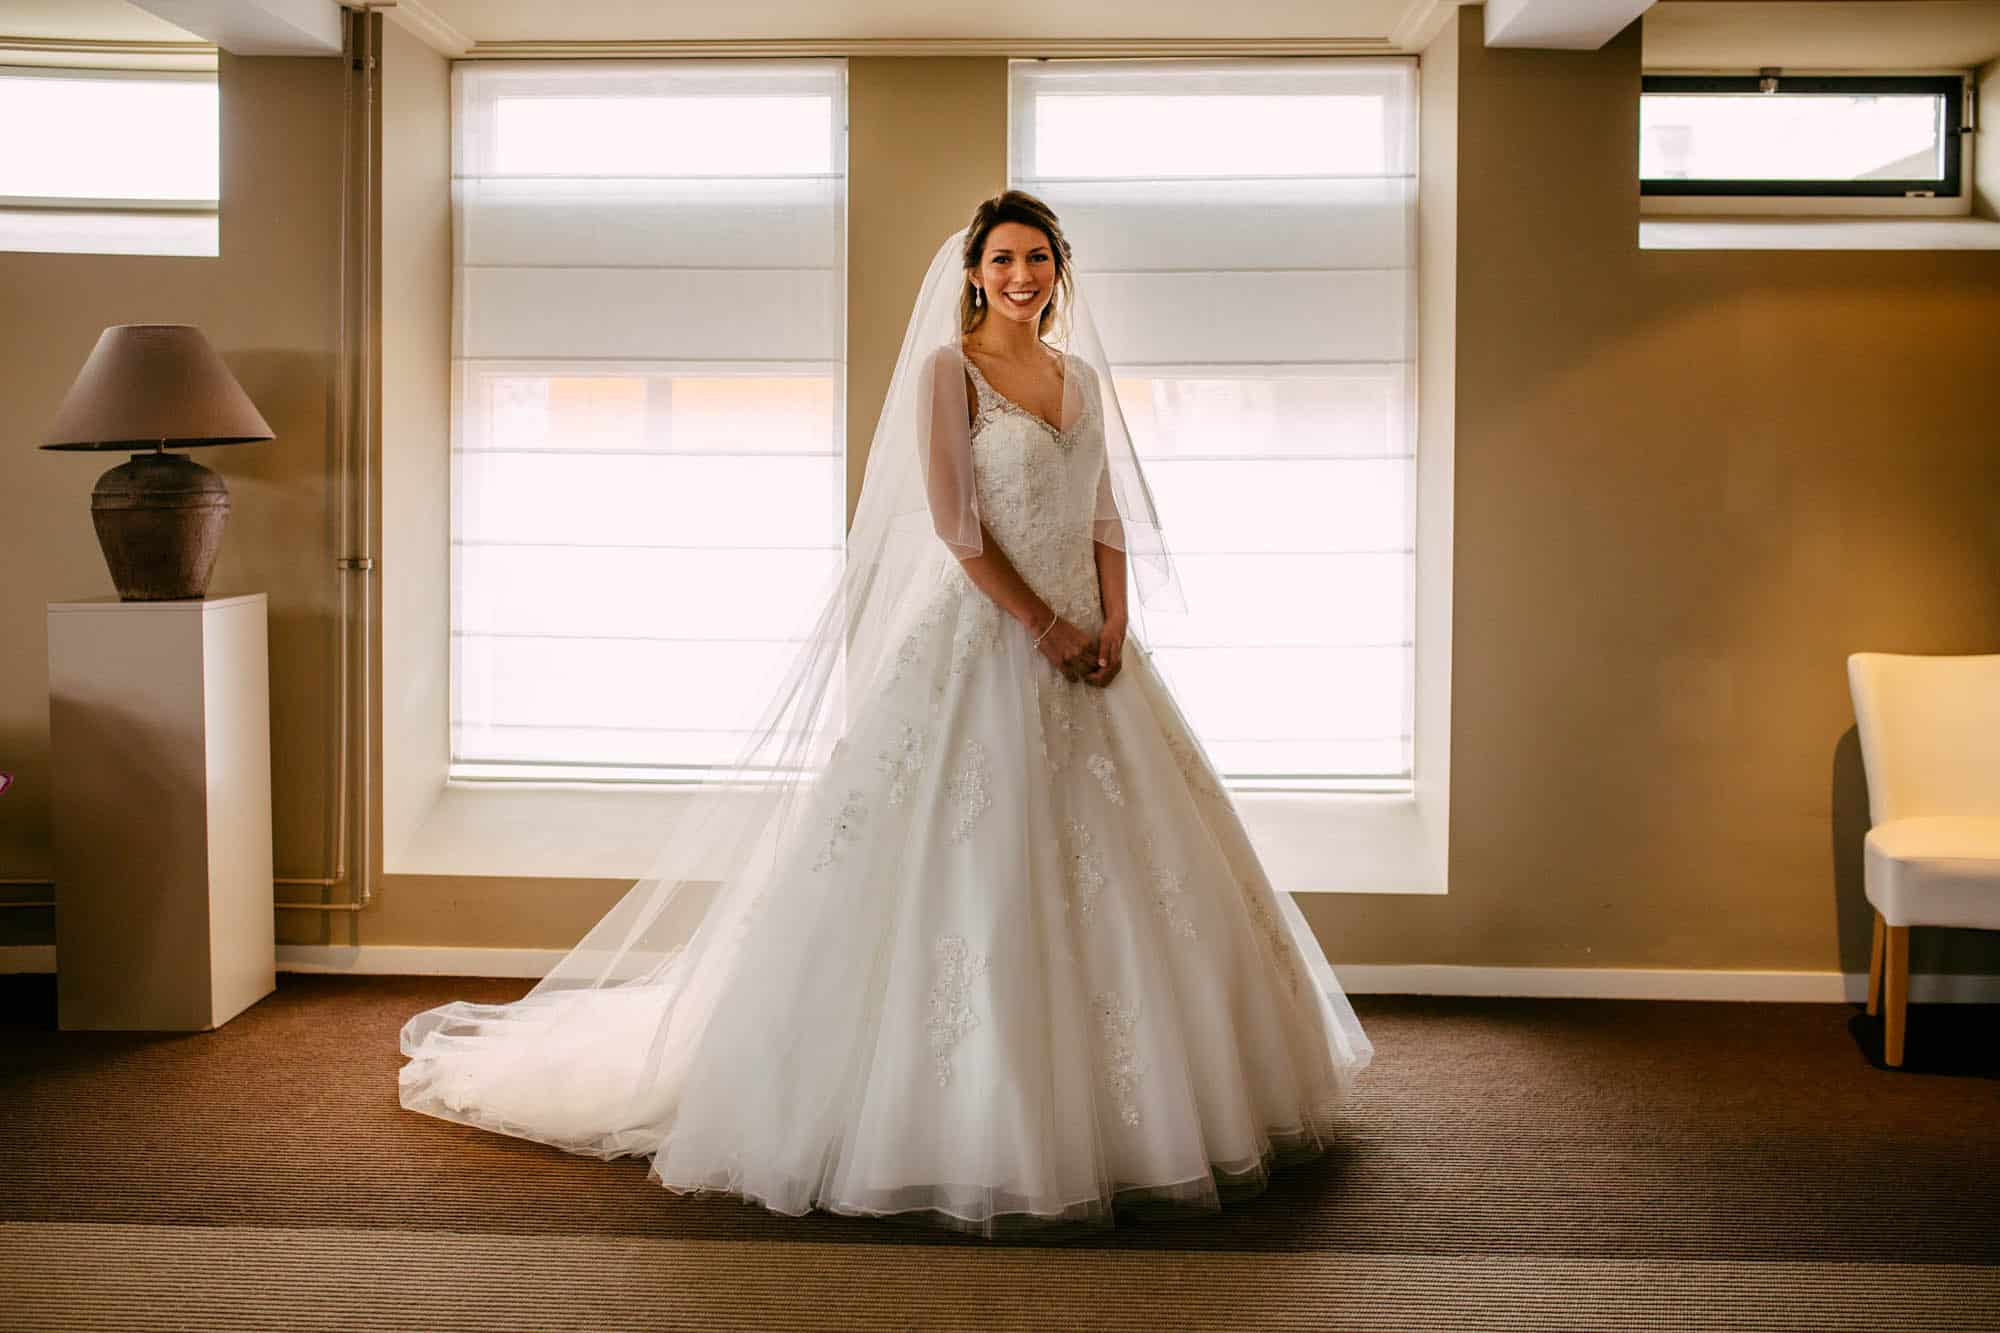 Beschrijving: Een bruid in een trouwjurk staat in een kamer.